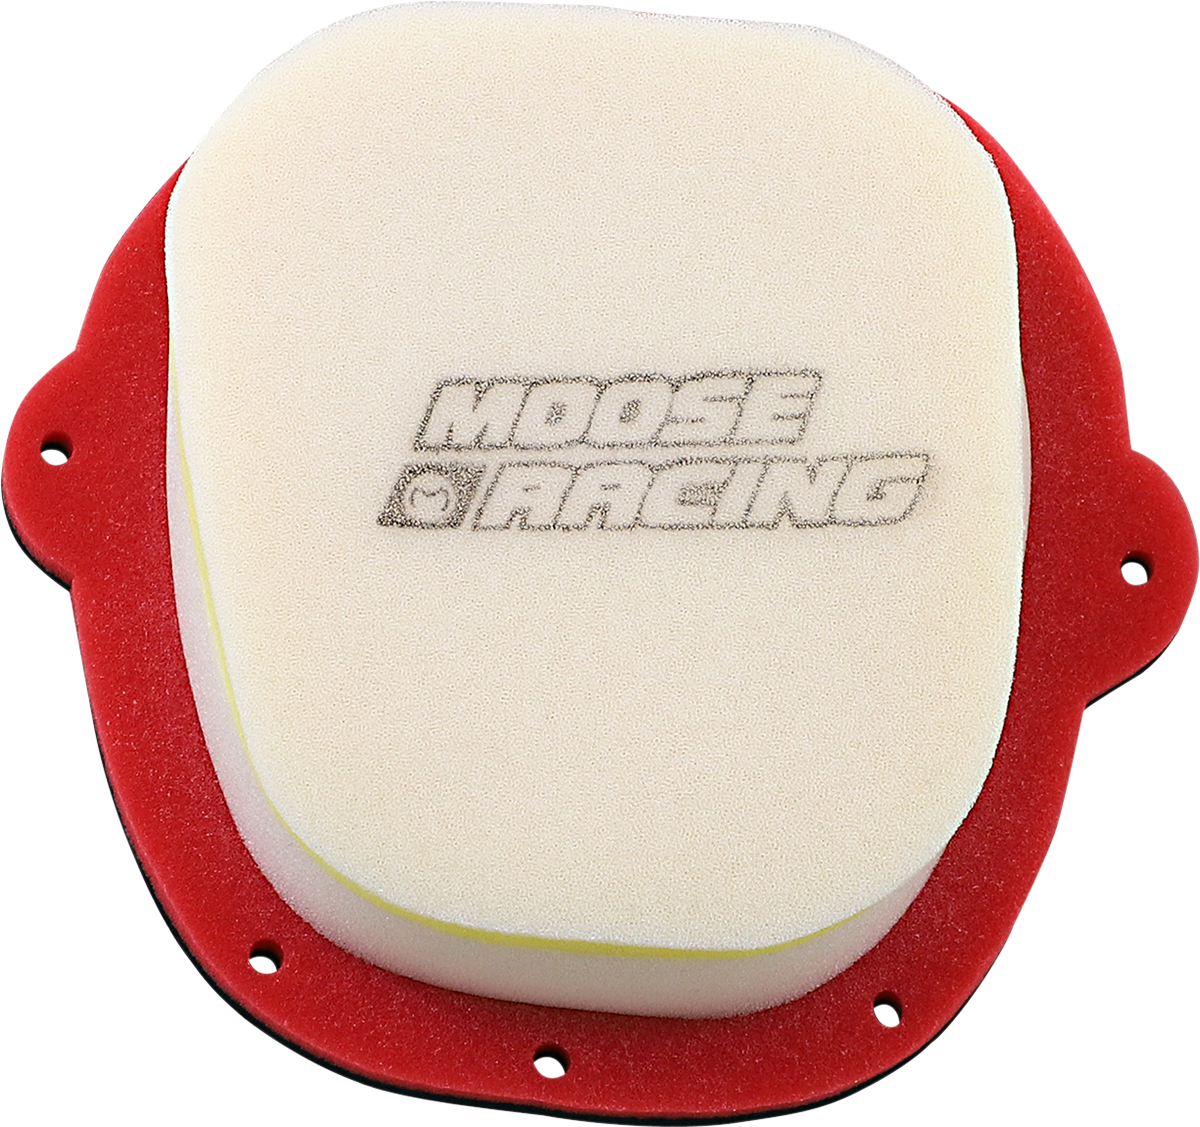 MOOSE RACING Air Filter - Honda 1-20-37